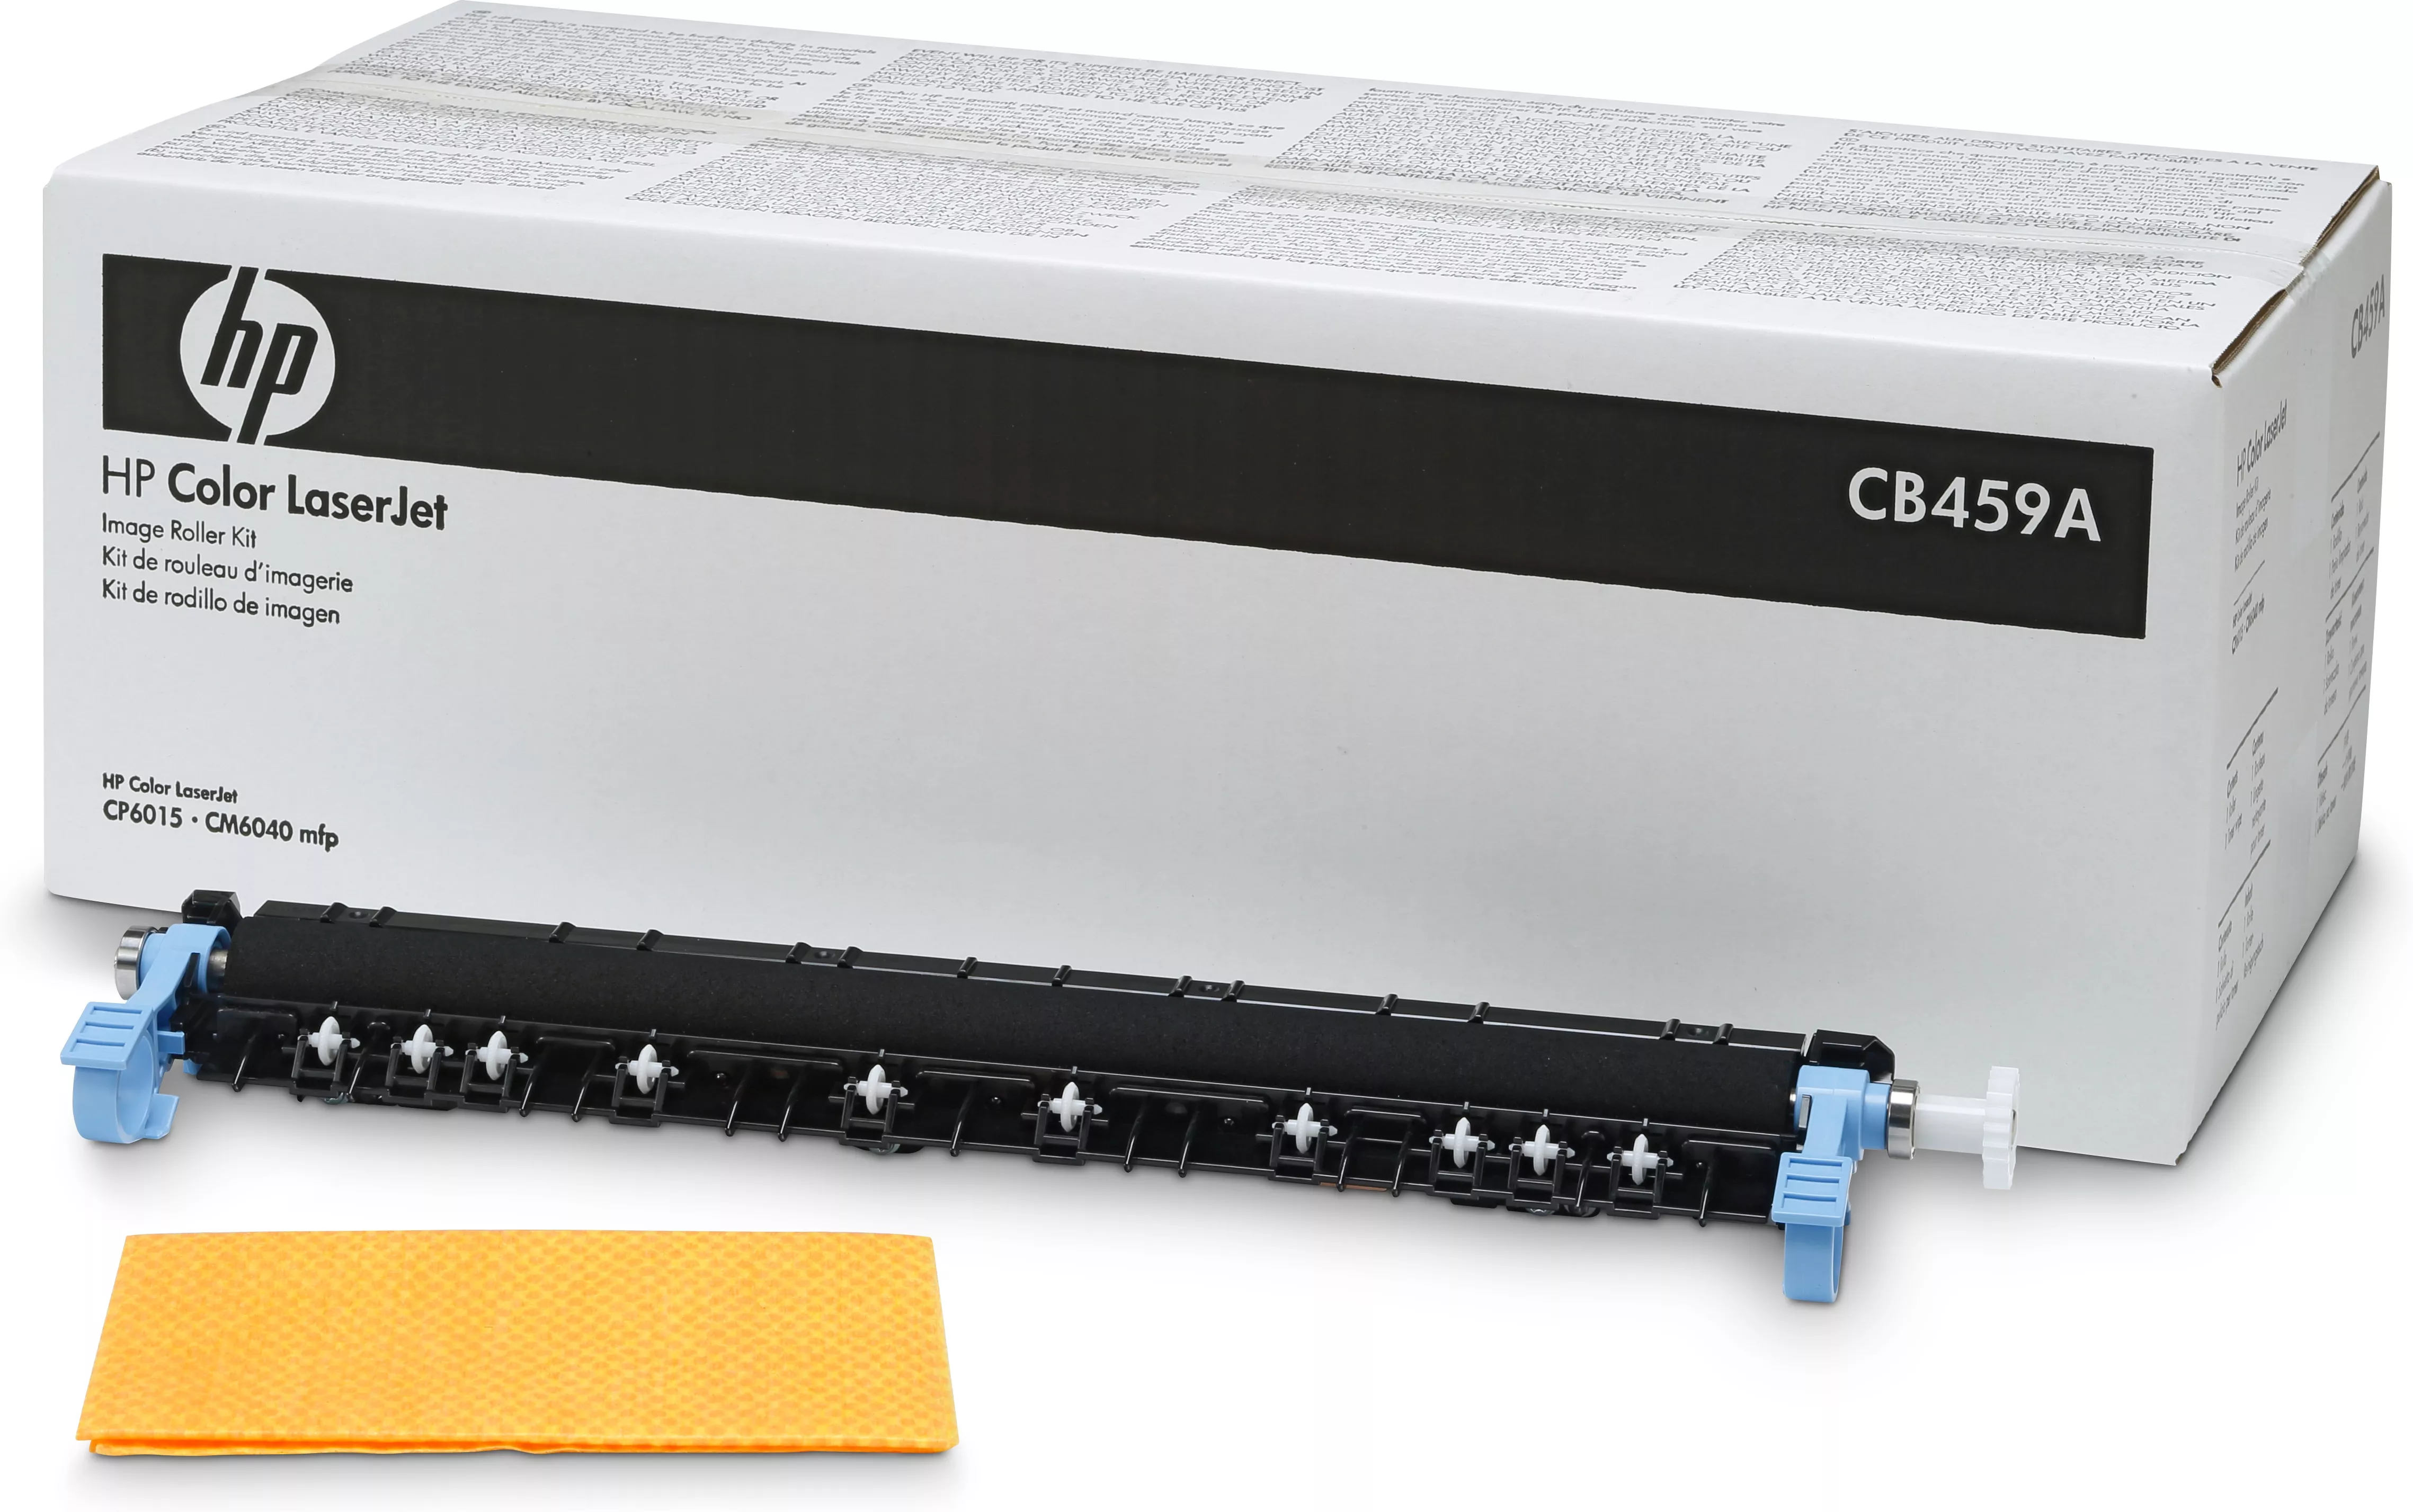 Vente Accessoires pour imprimante HP Color LaserJet CB459A Roller Kit sur hello RSE